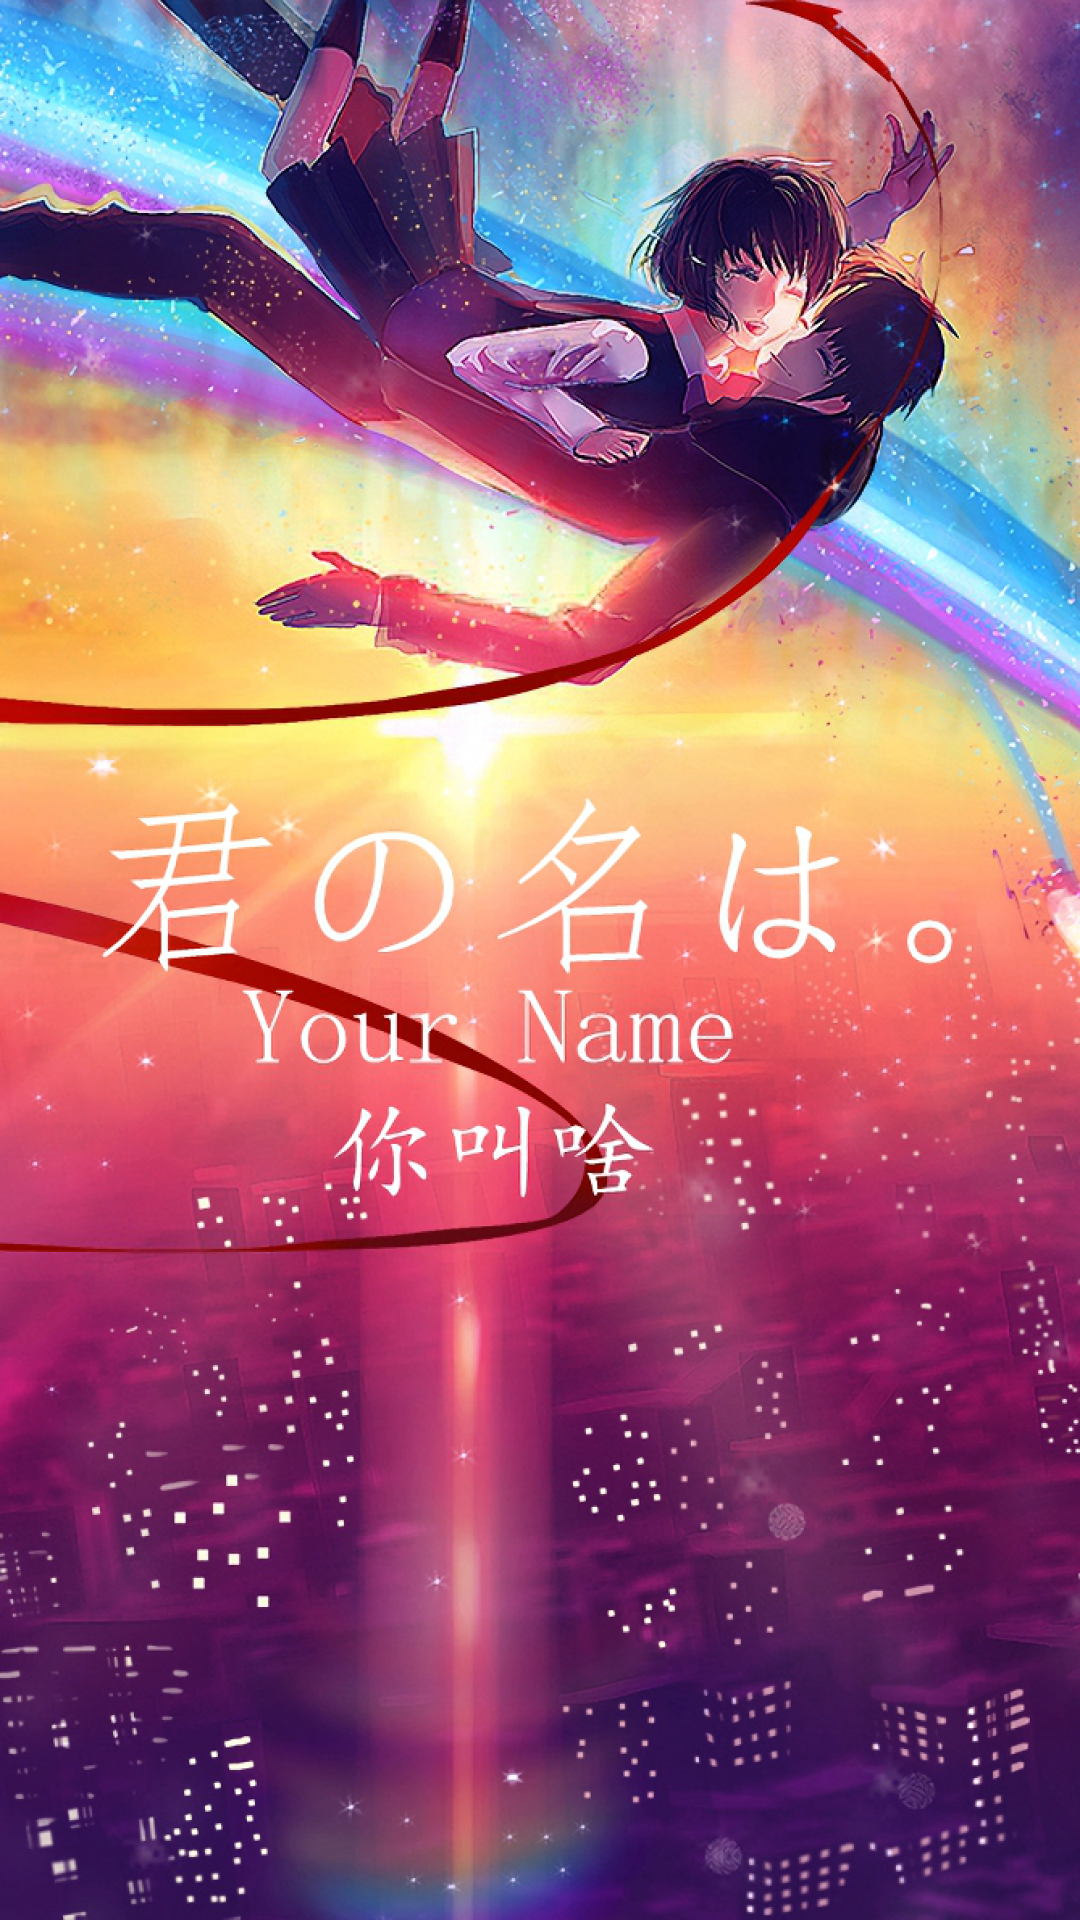 Your Name, Taki Tachibana, Mitsuha Miyamizu, Falling, - Hd Wallpaper Iphone Your Name - HD Wallpaper 